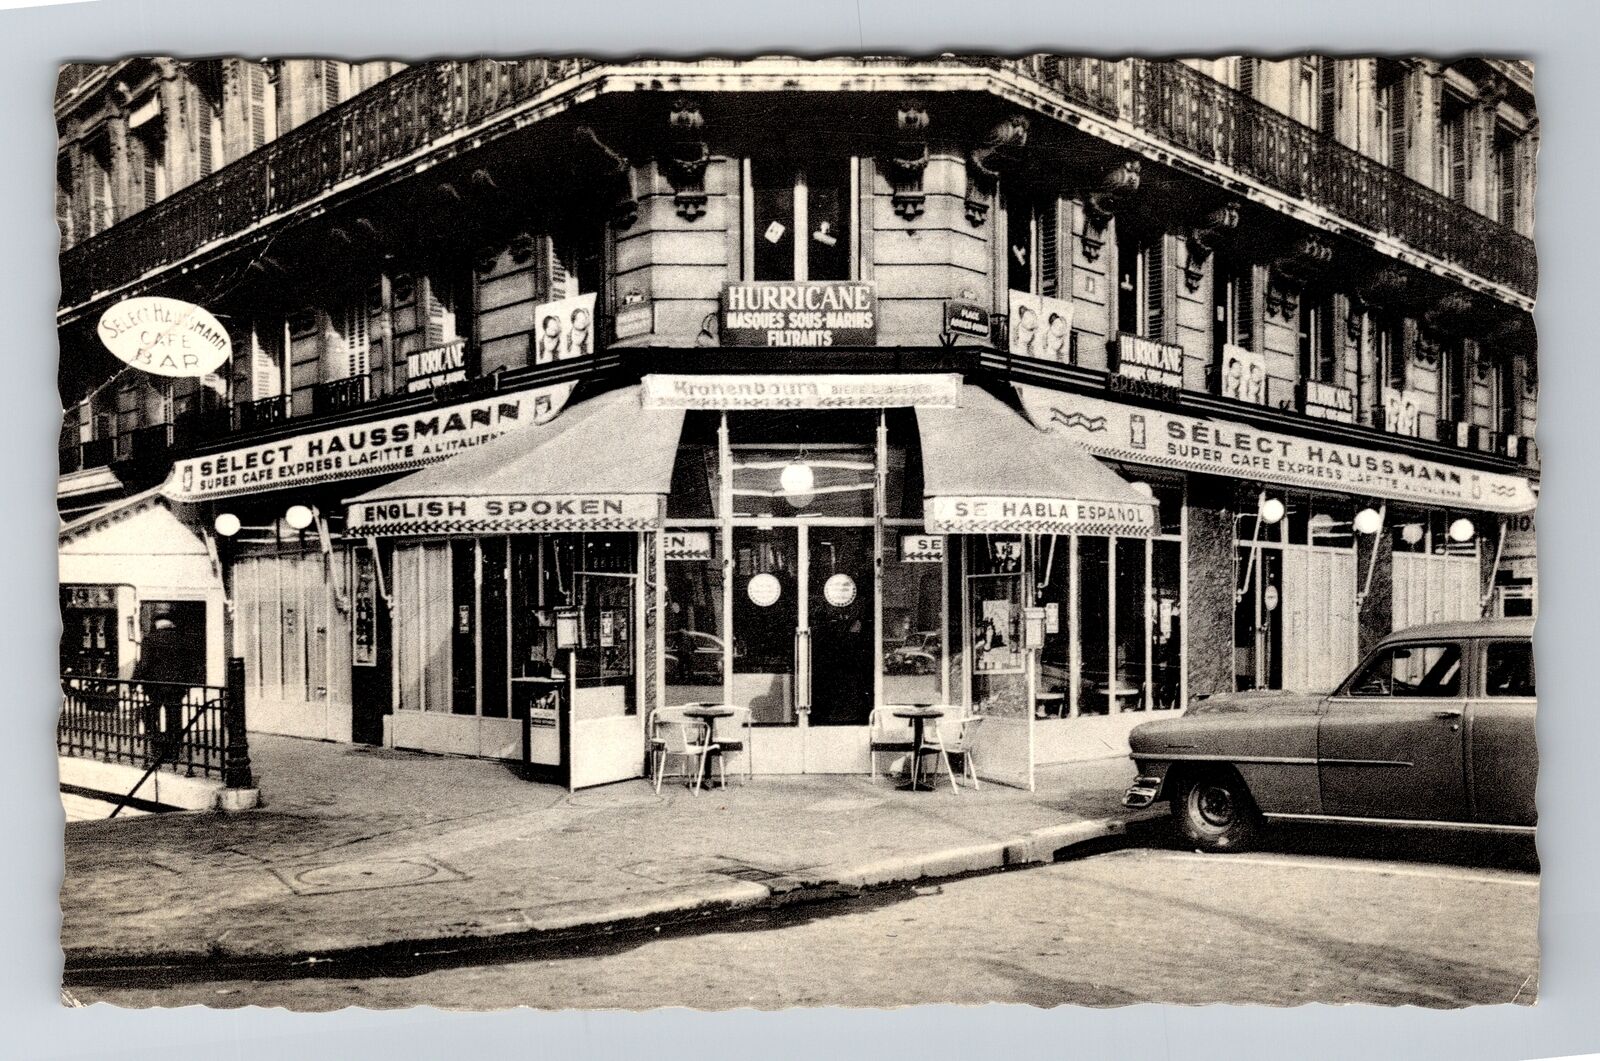 Paris France, Le Select Haussmann, Vintage Postcard